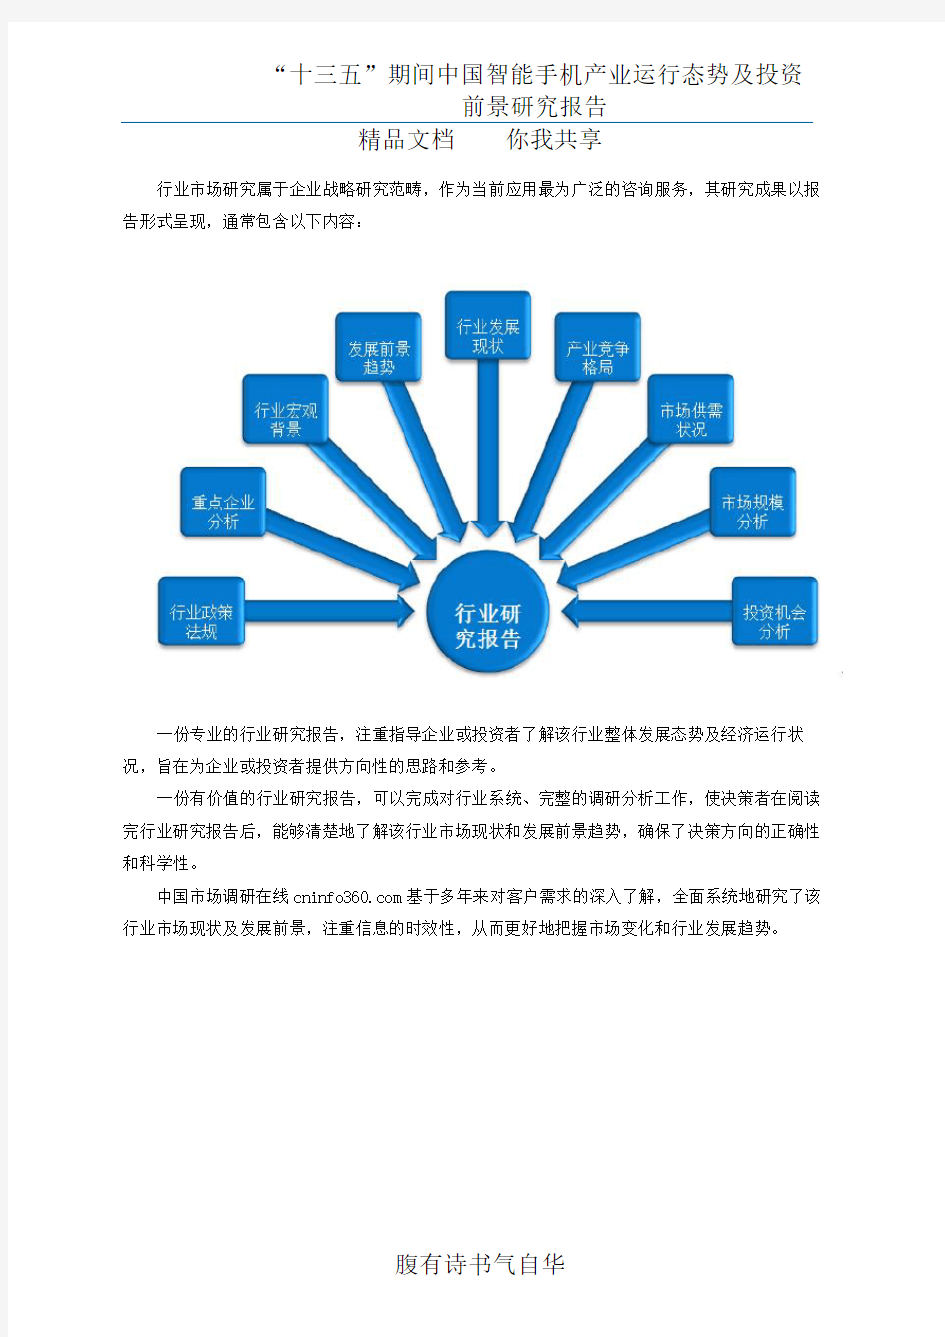 中国智能手机产业分析报告